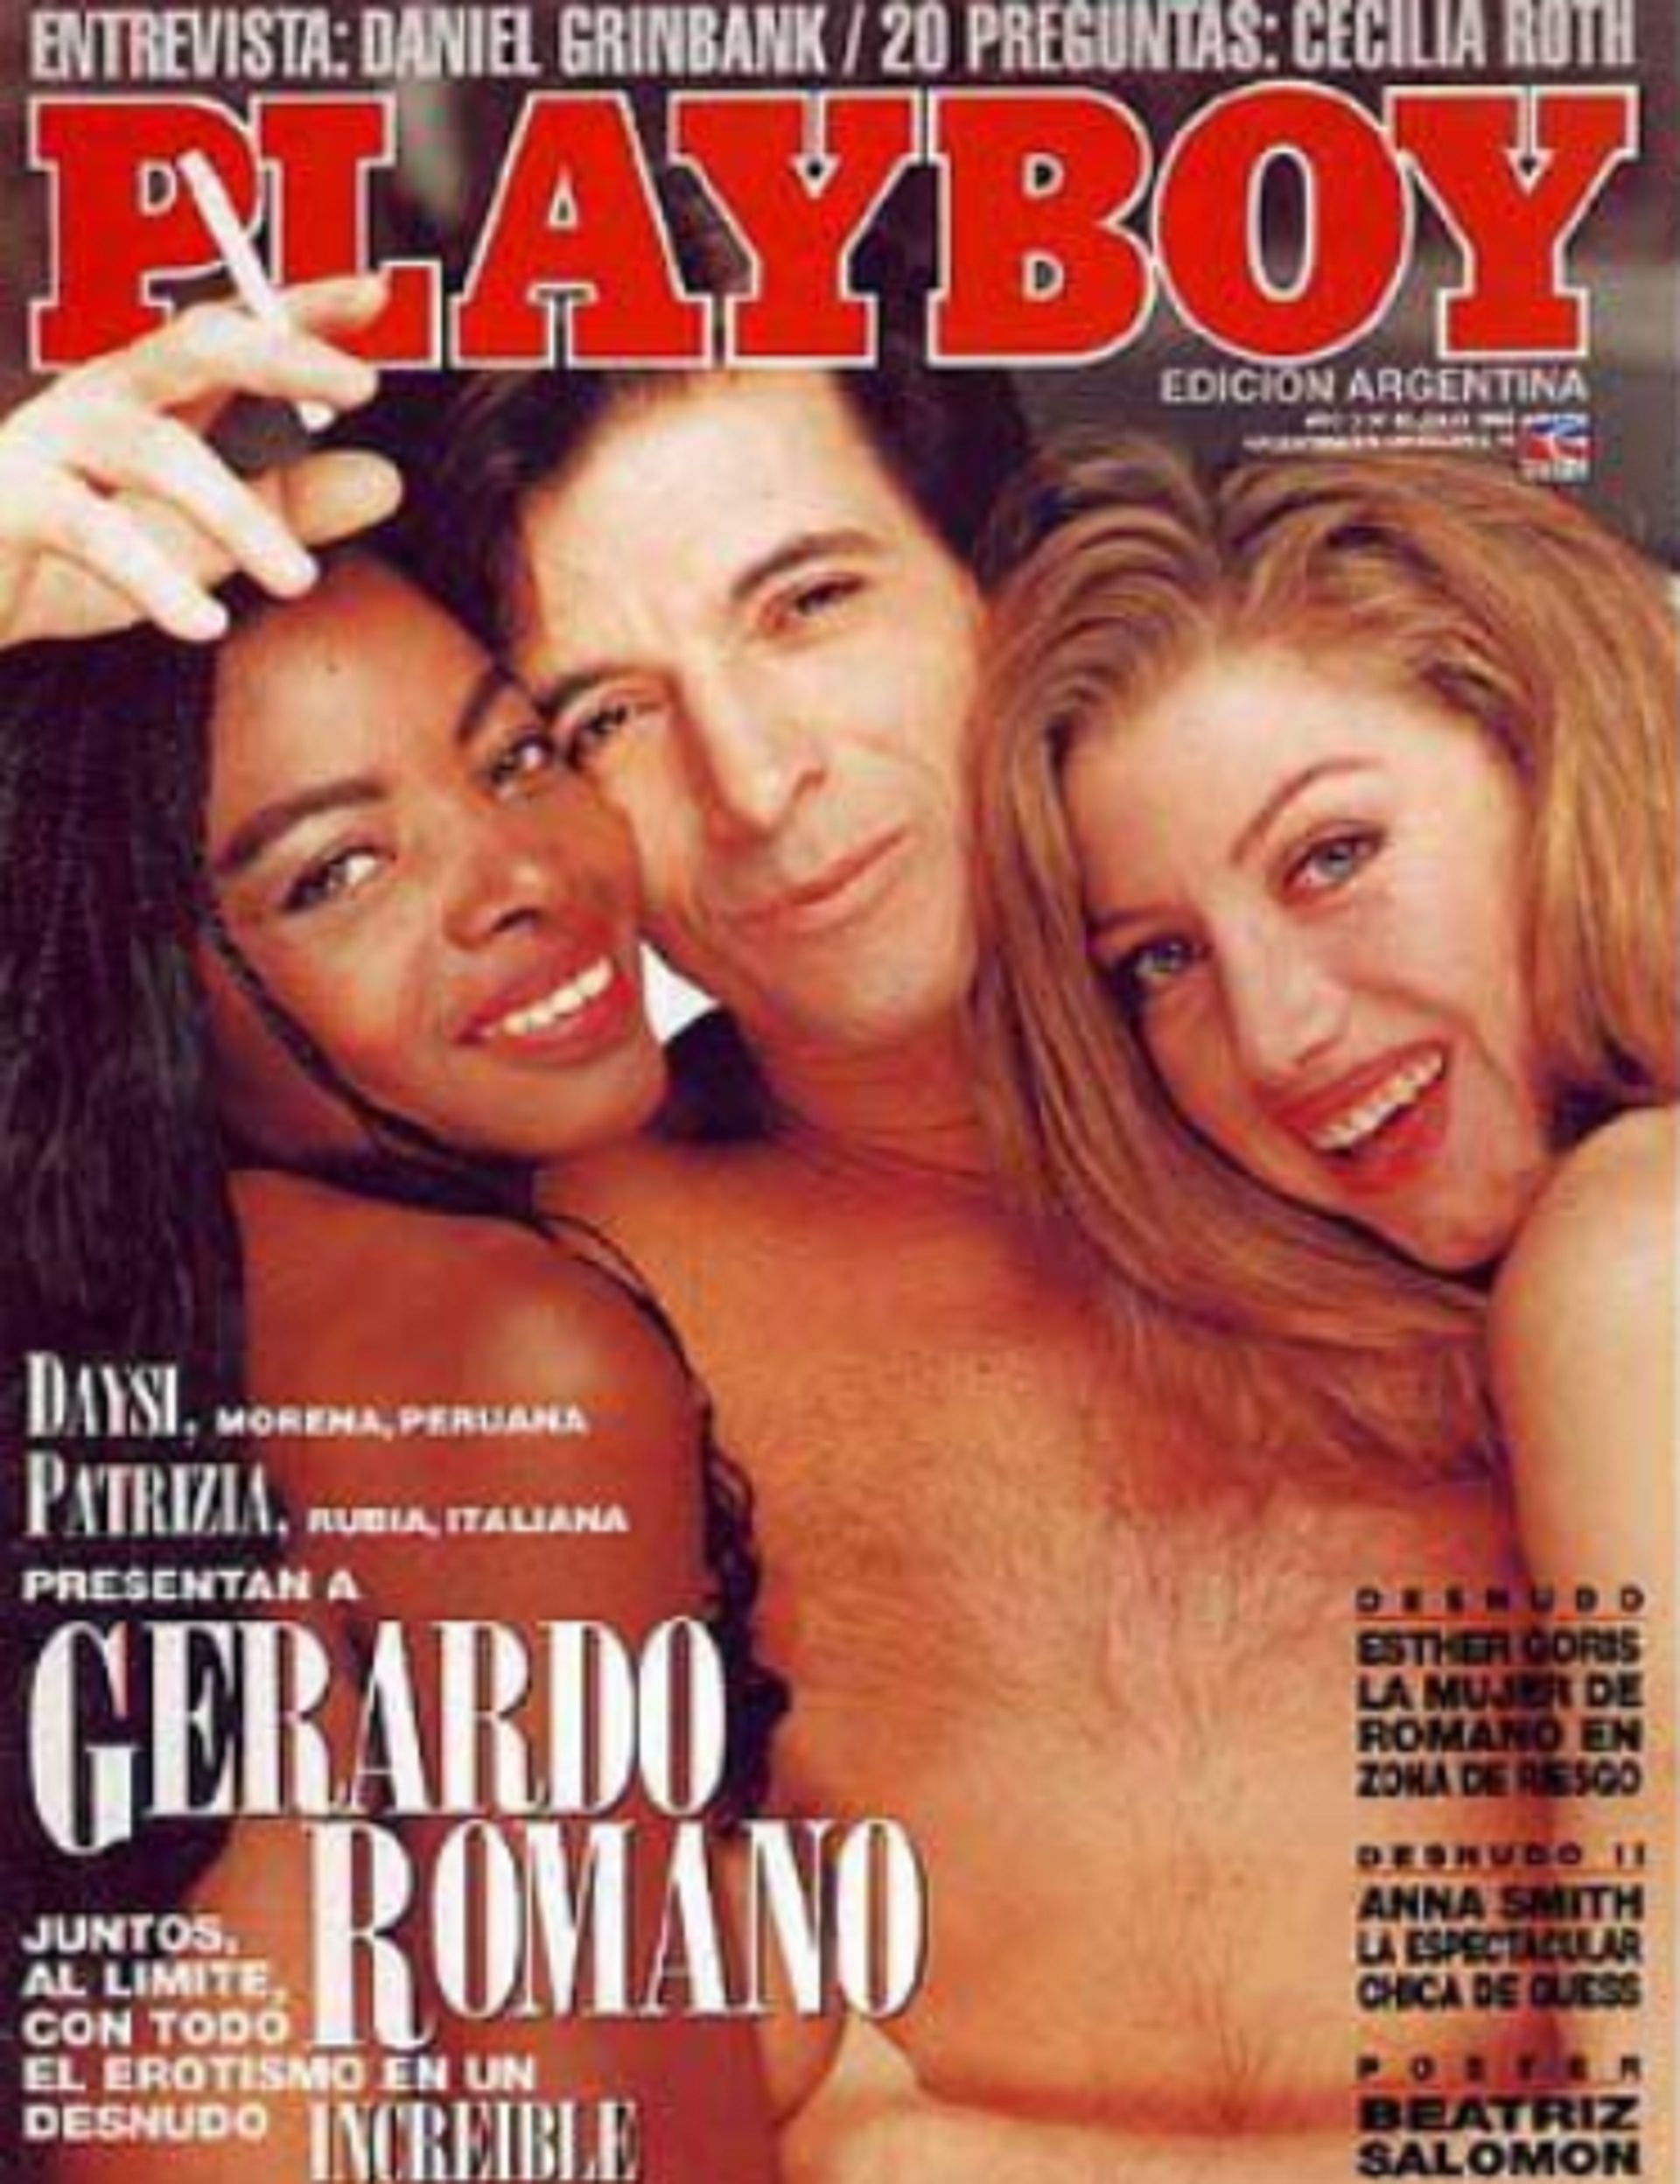 Gerardo Romano, siempre al límite de todo, en la tapa de Playboy, en los 90